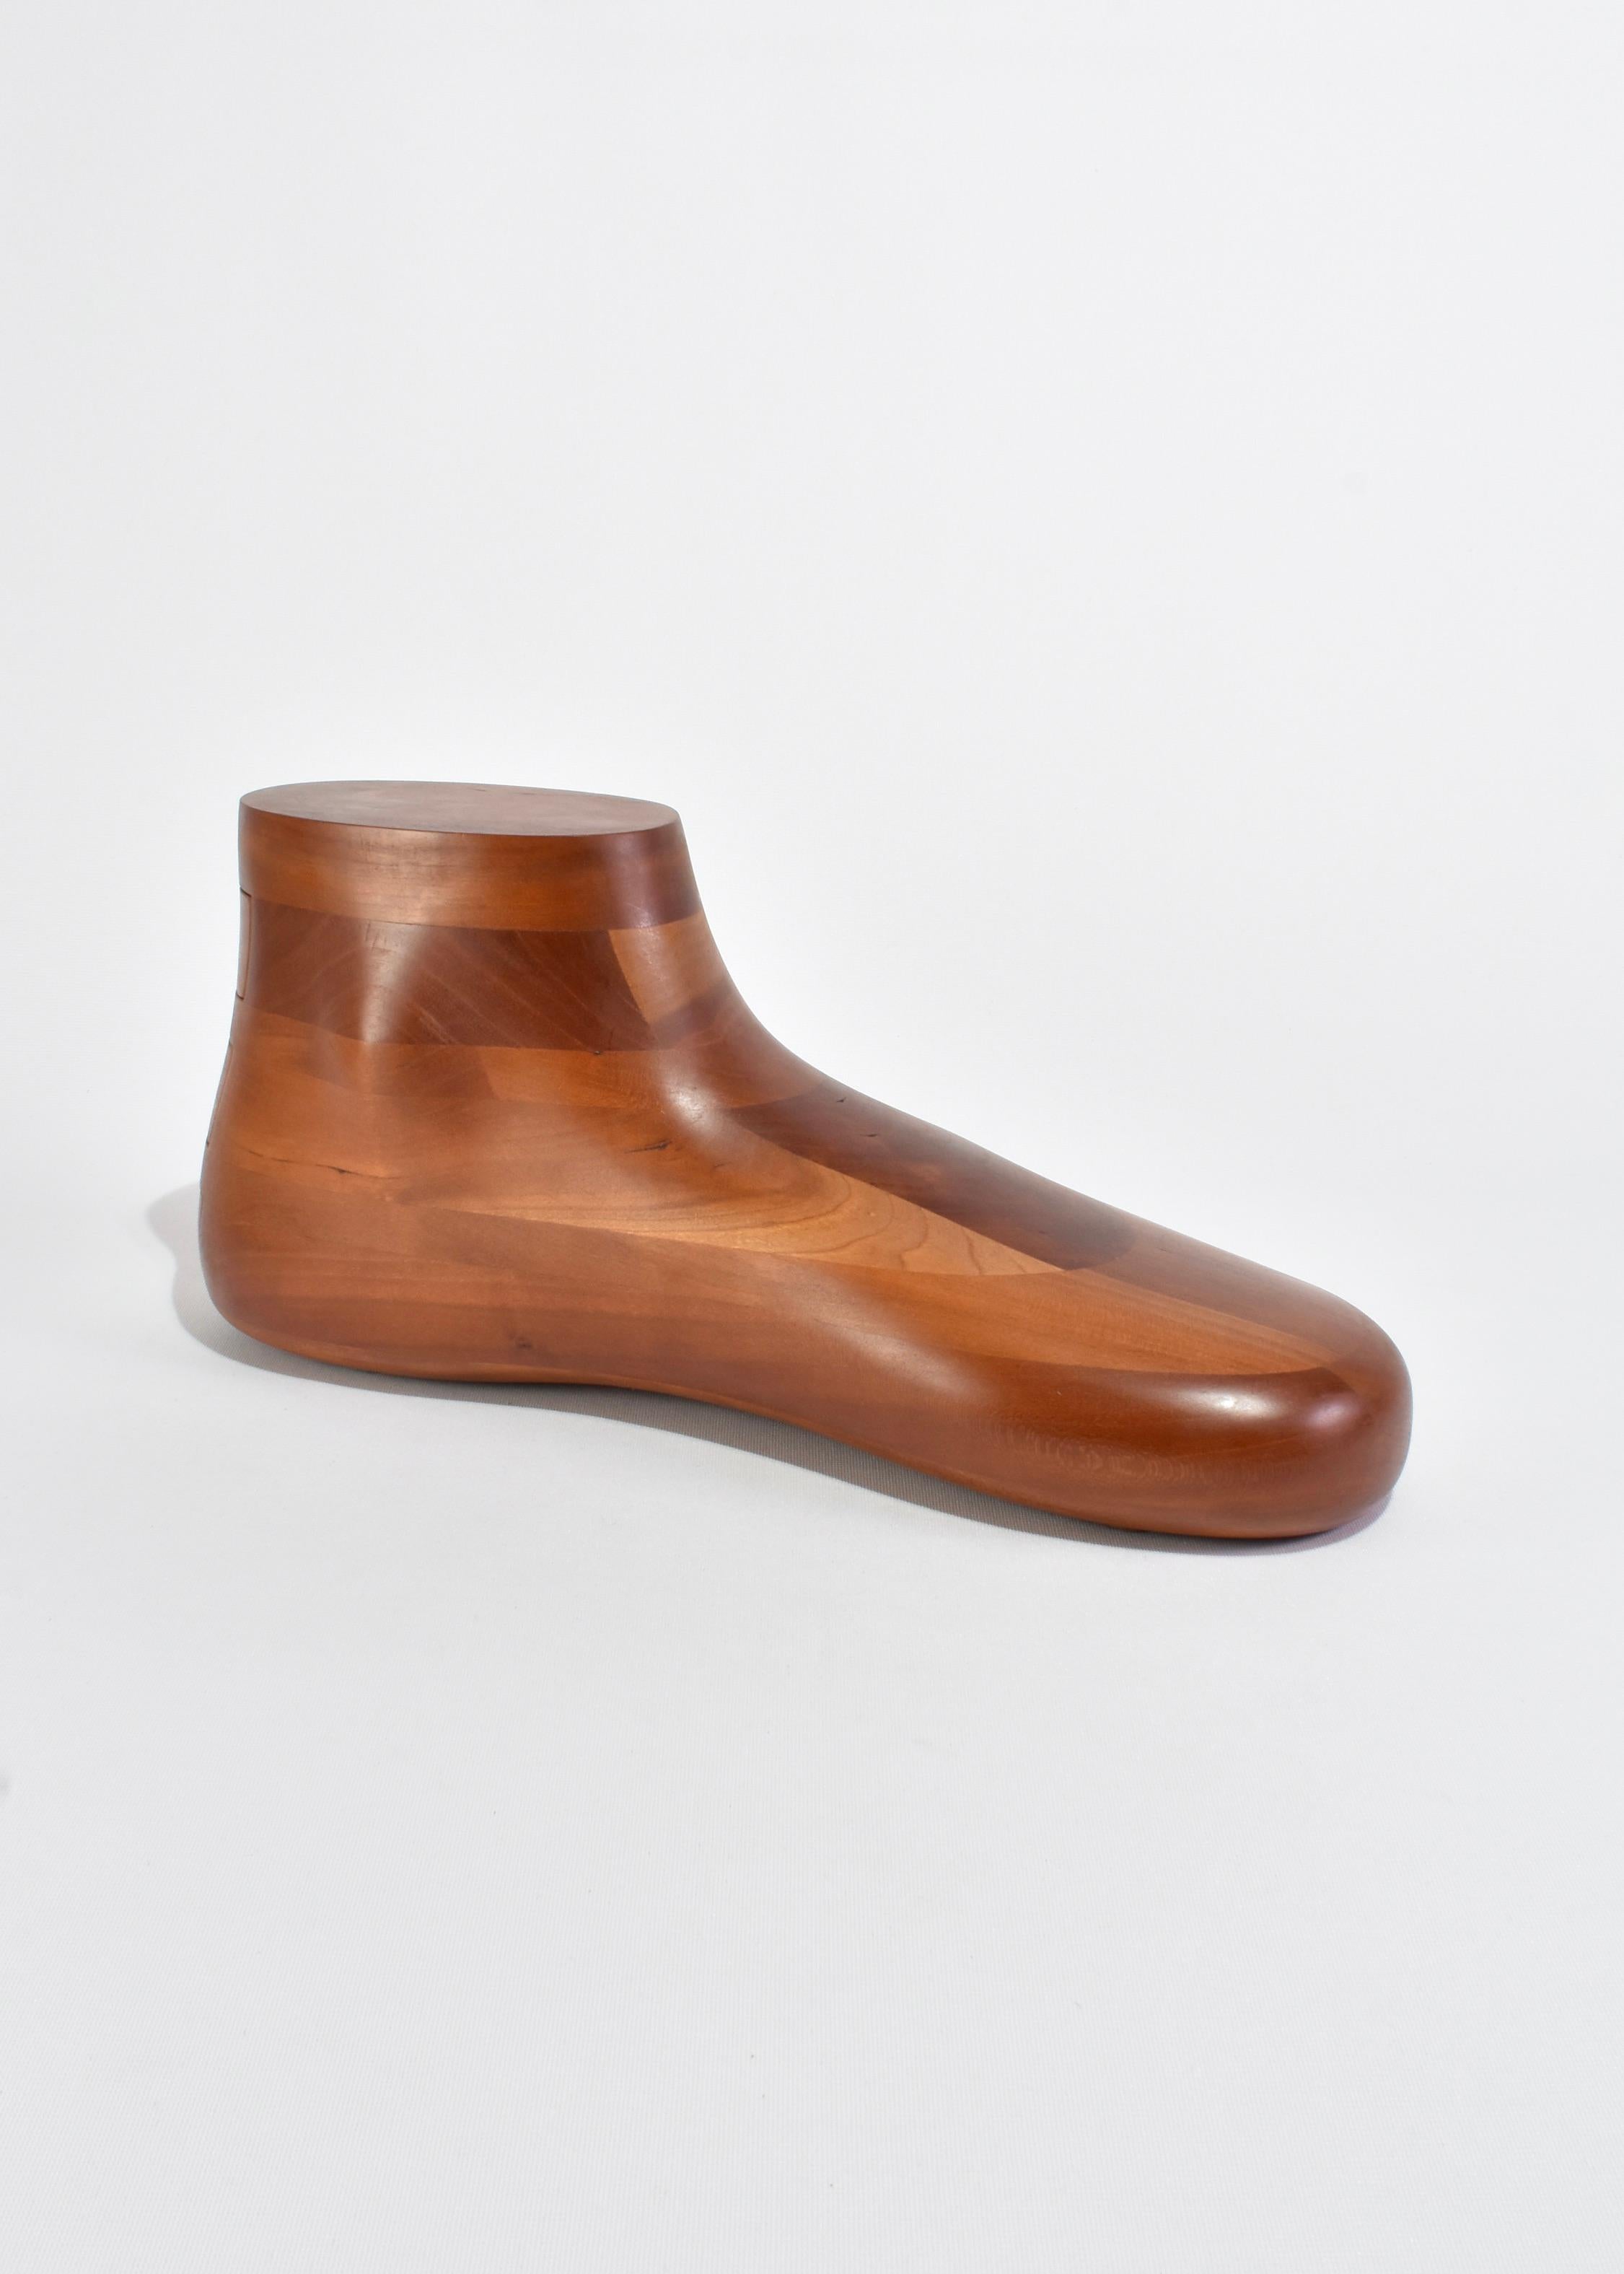 Seltene, handgefertigte Schmuckschatulle aus Holz in Form eines Fußes mit drei geheimen Schiebeschubladen zur Aufbewahrung von Schmuck. Signiert auf der Basis, Gene Sherer 1987 #39.